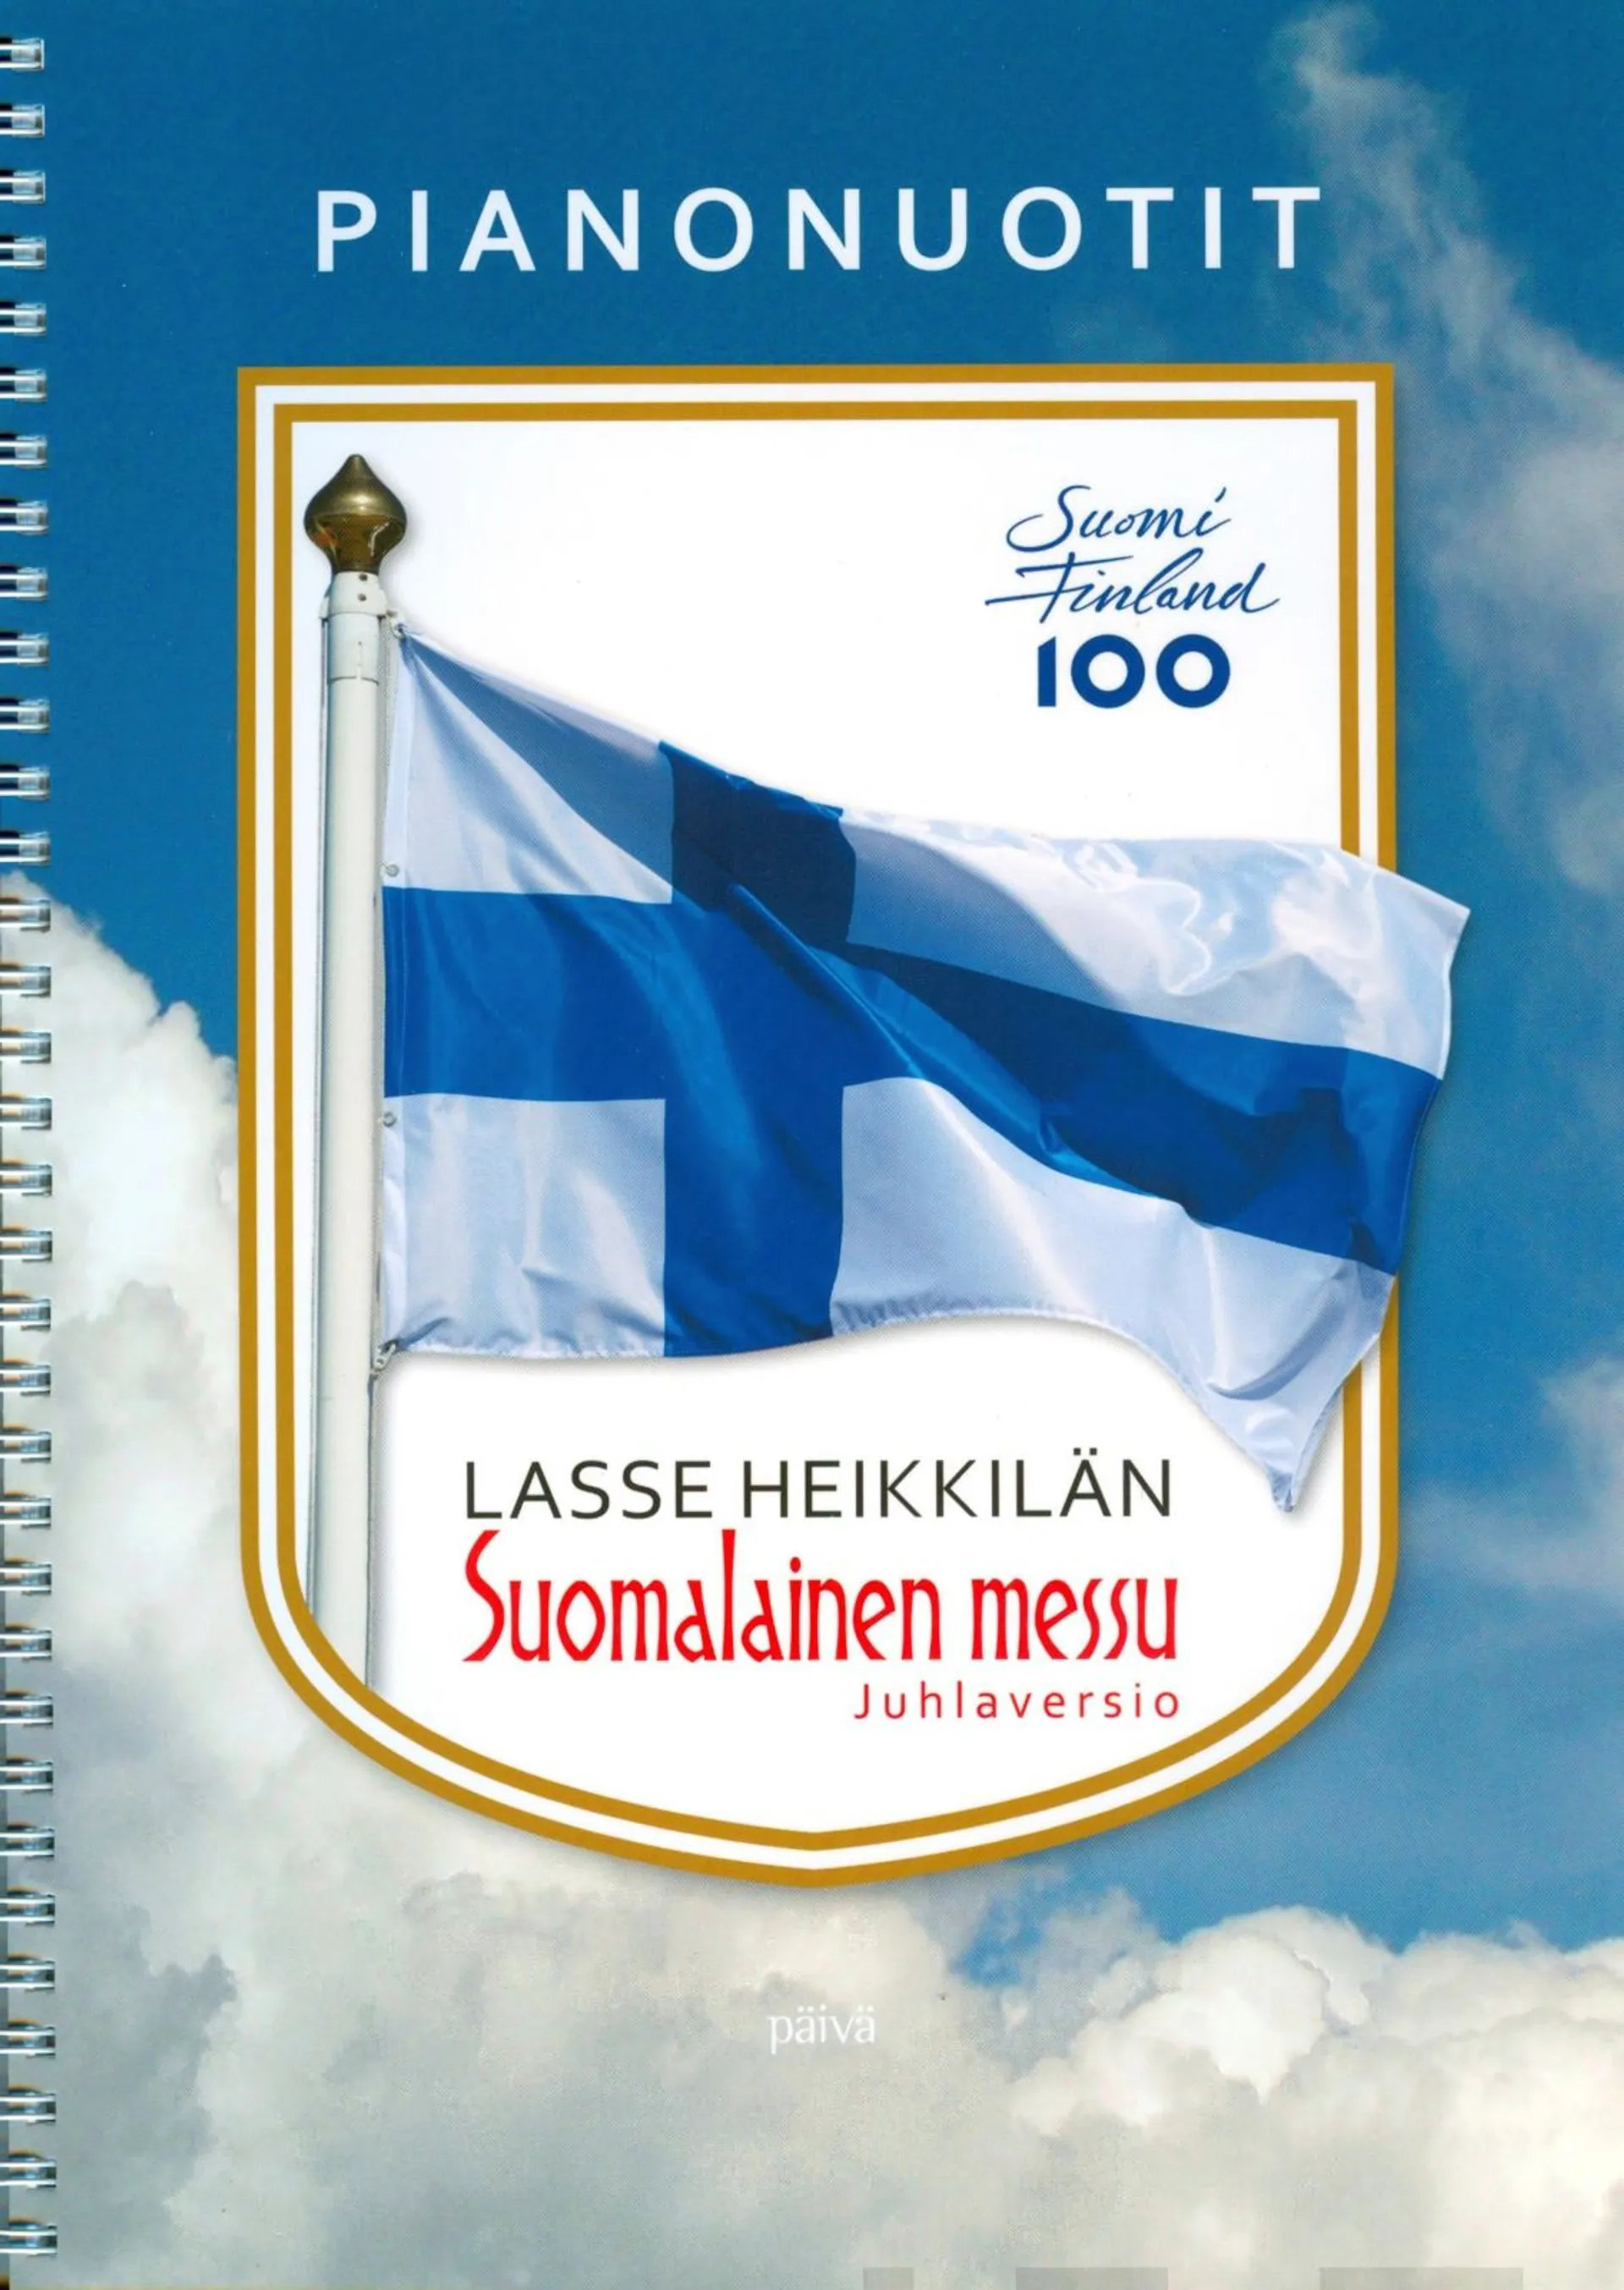 Lasse Heikkilän Suomalainen messu